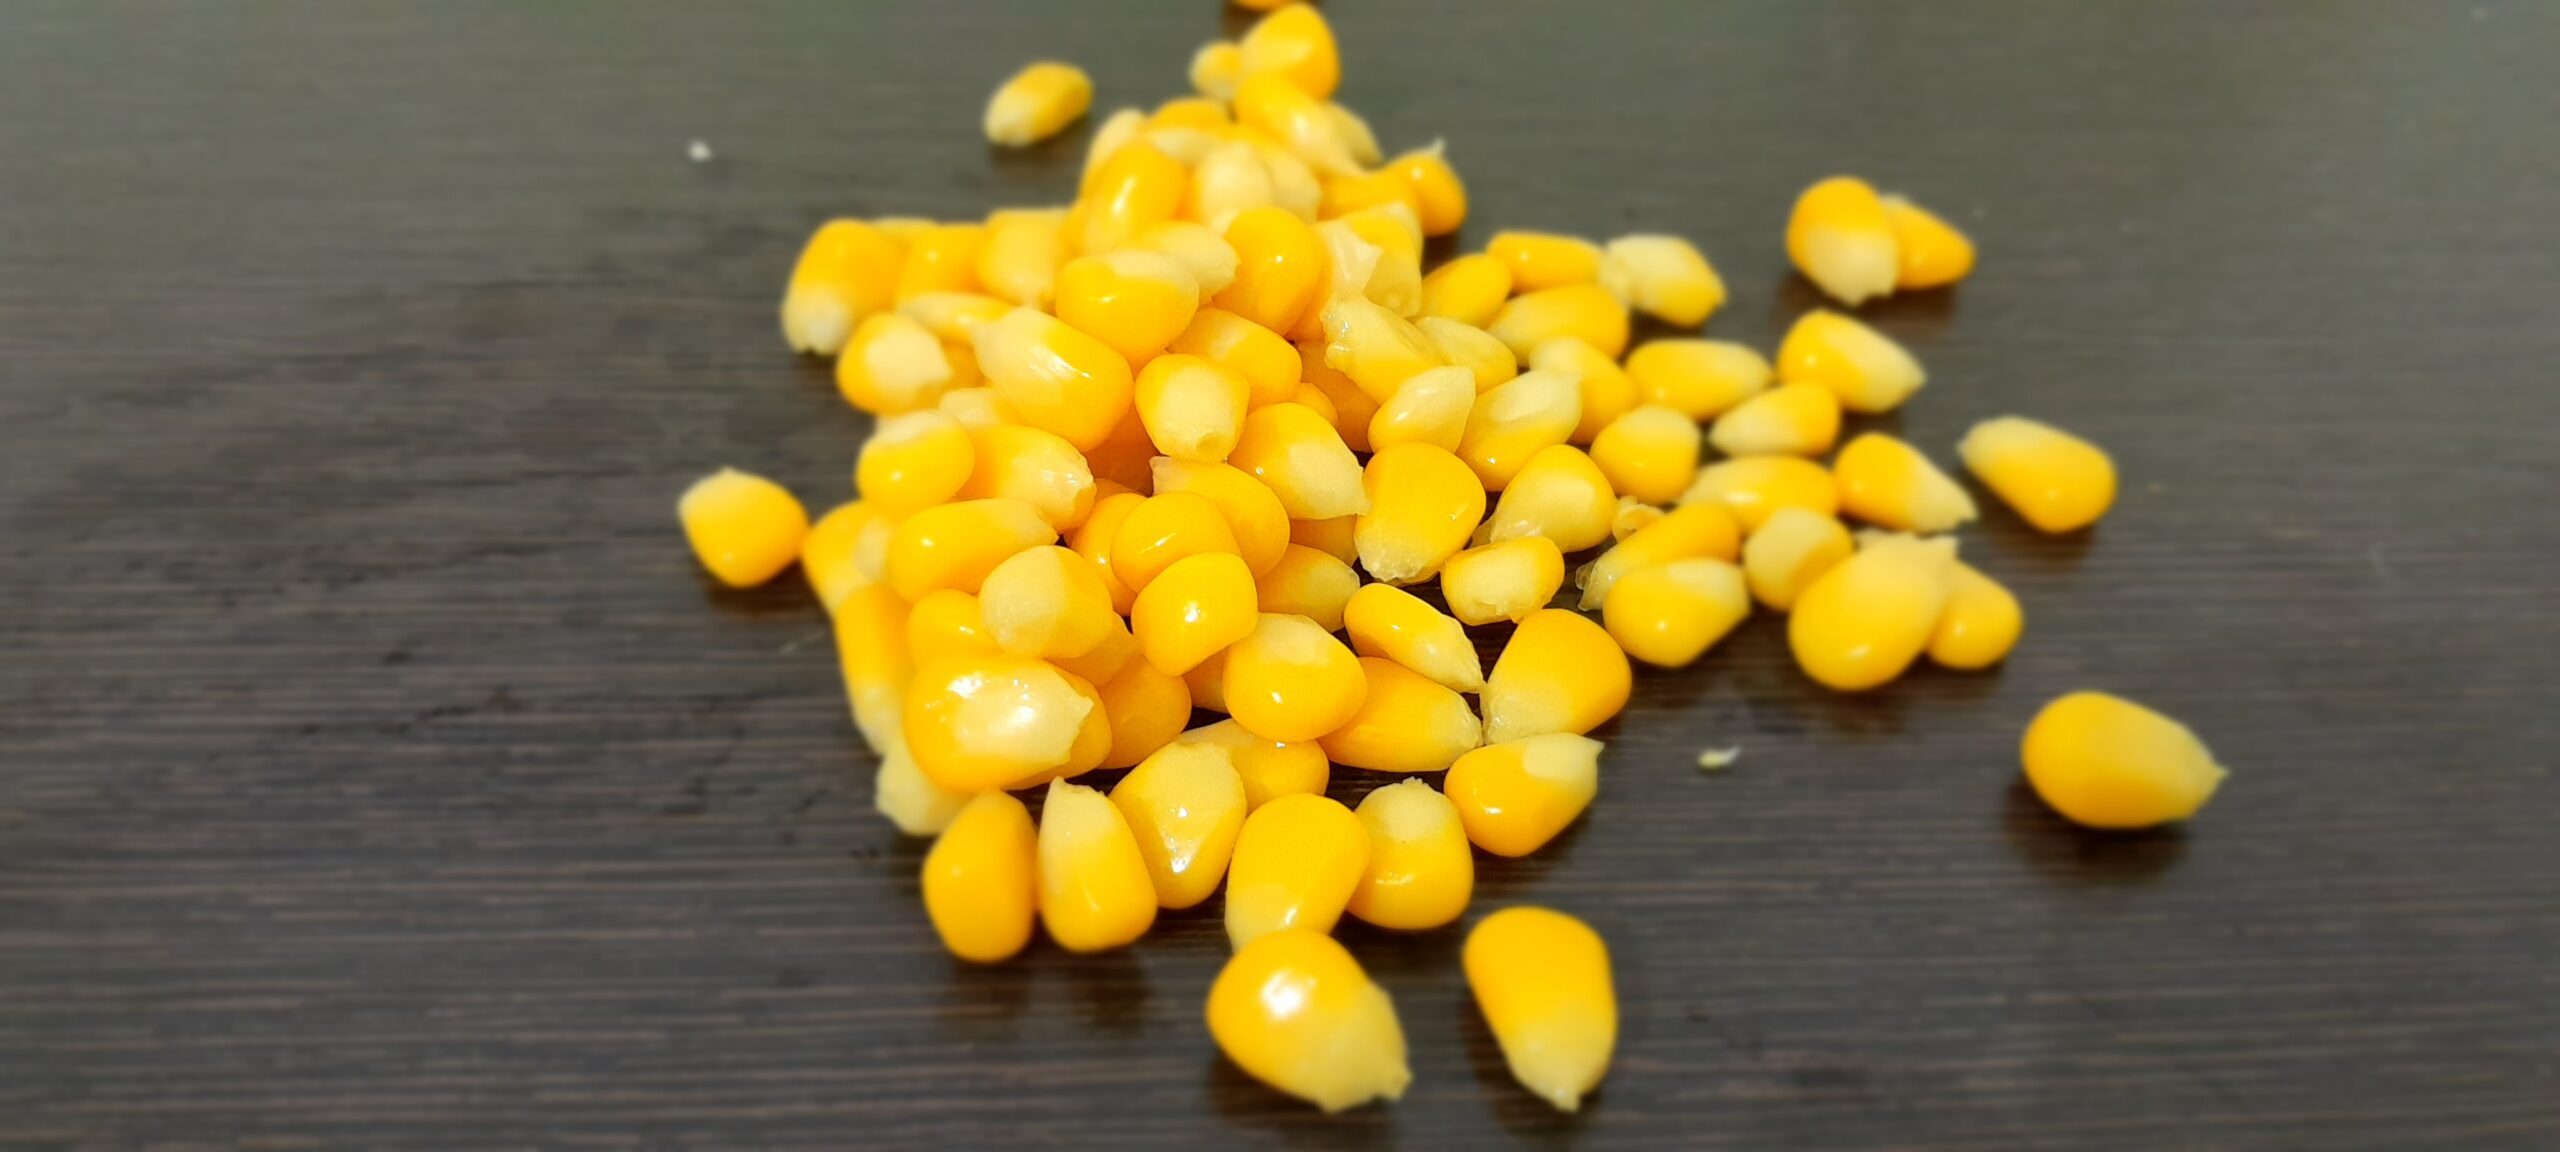 Sweet Corn Kernel